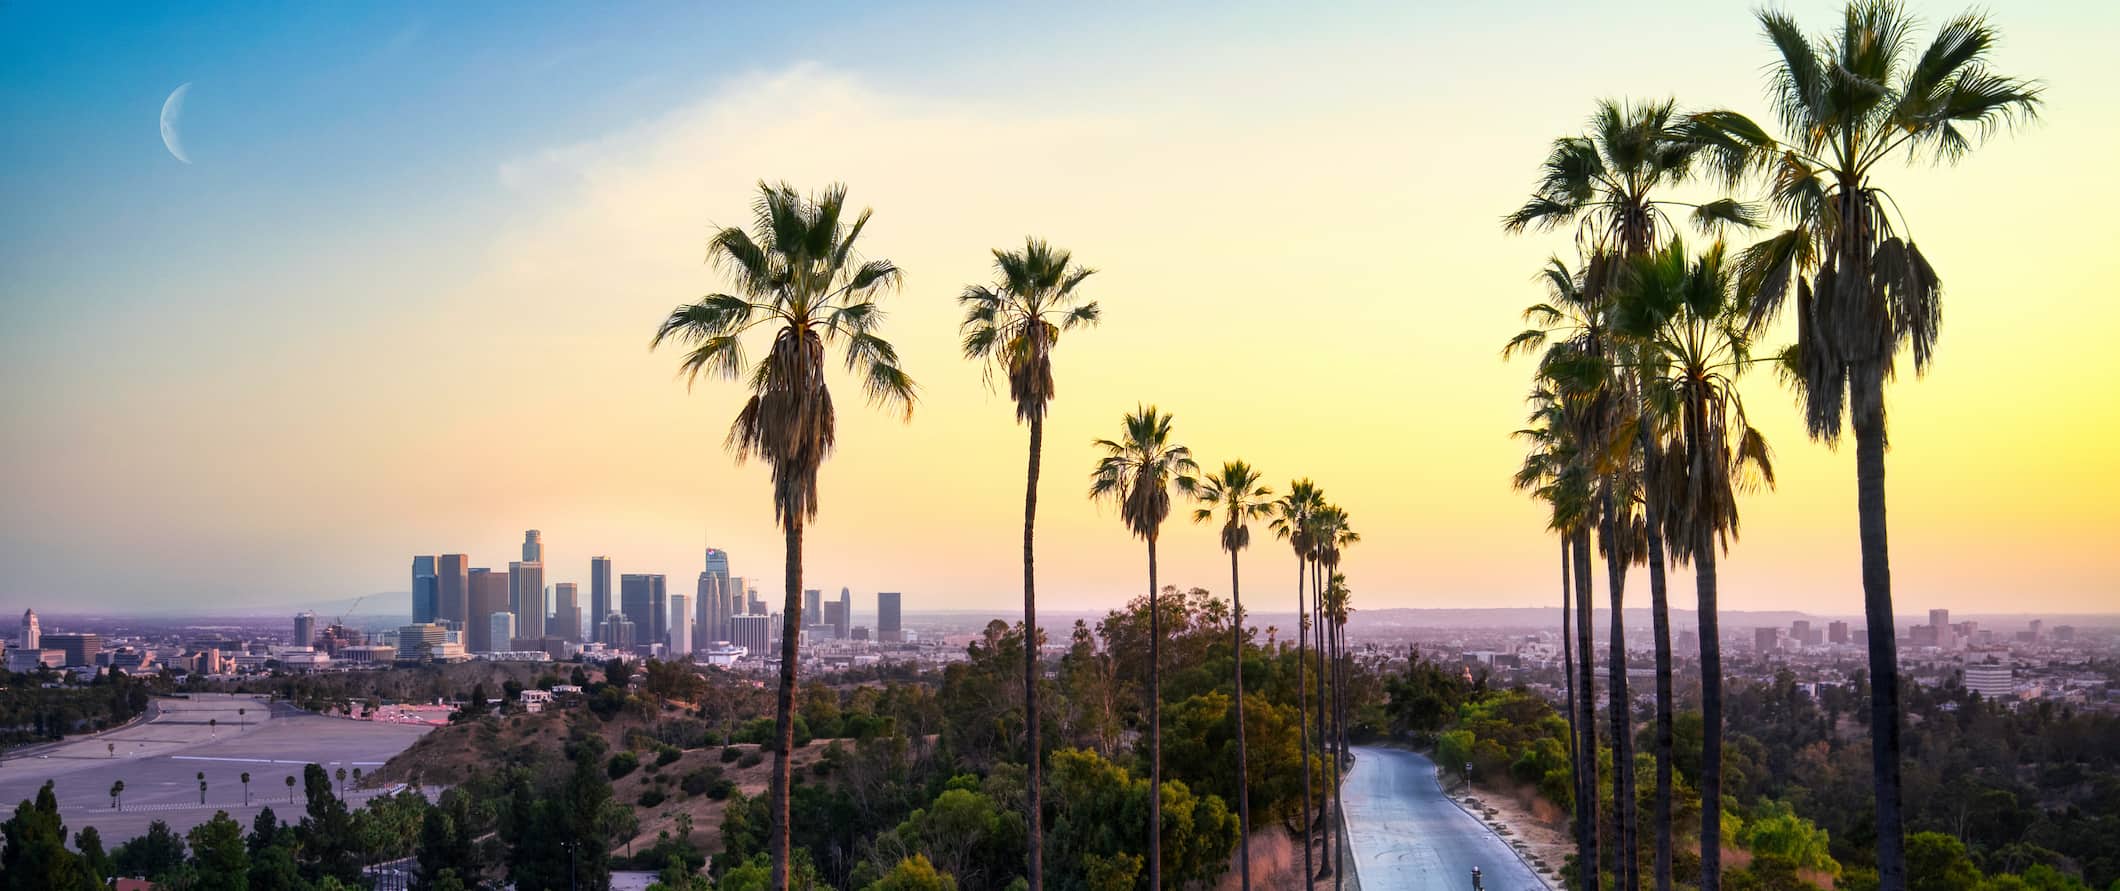 Los Angeles ao pôr do sol, com edifícios imponentes e palmeiras em primeiro plano.